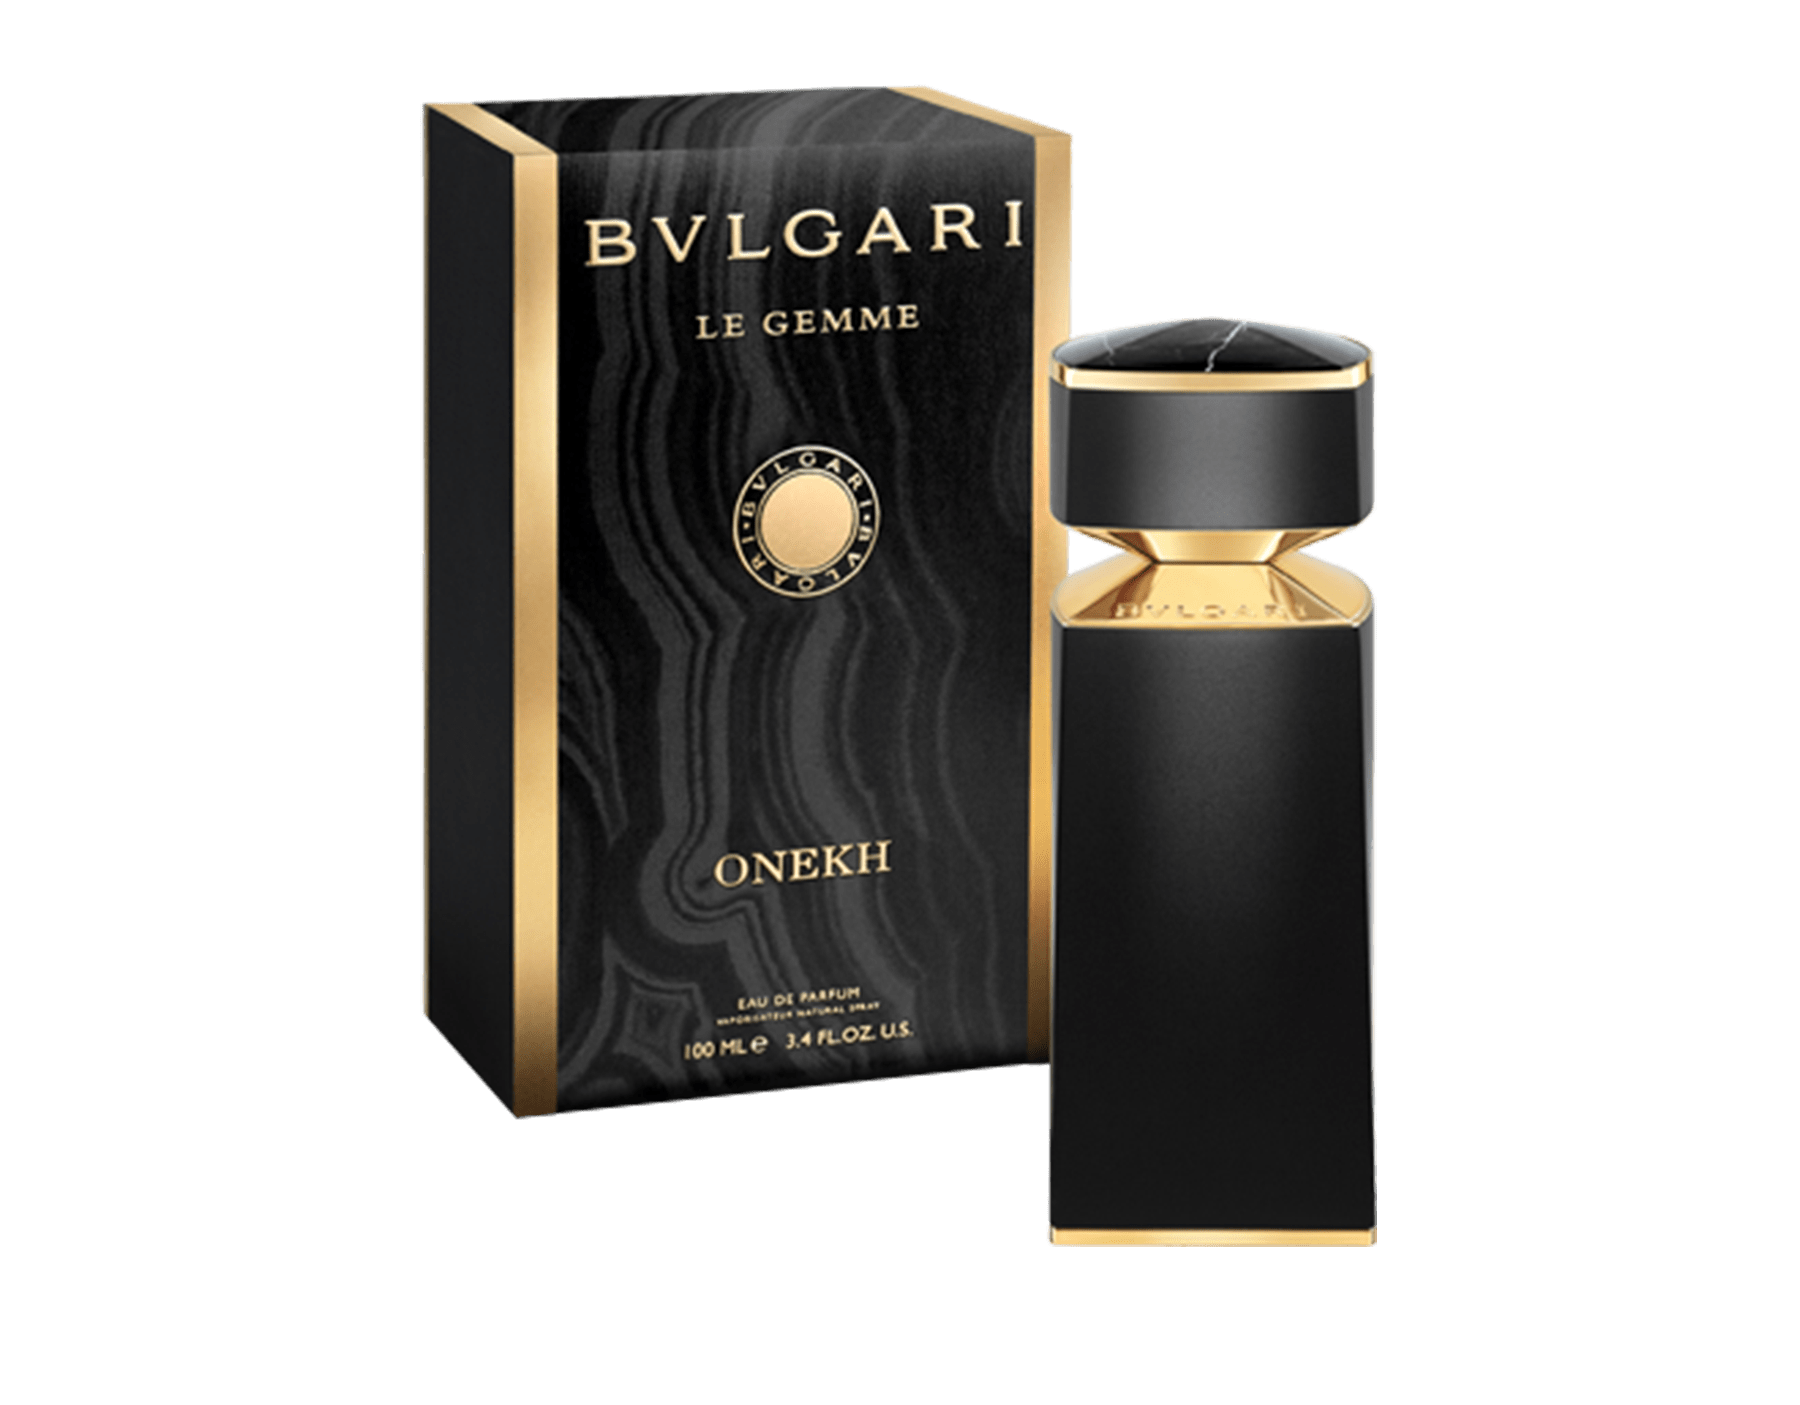 bvlgari perfume price list